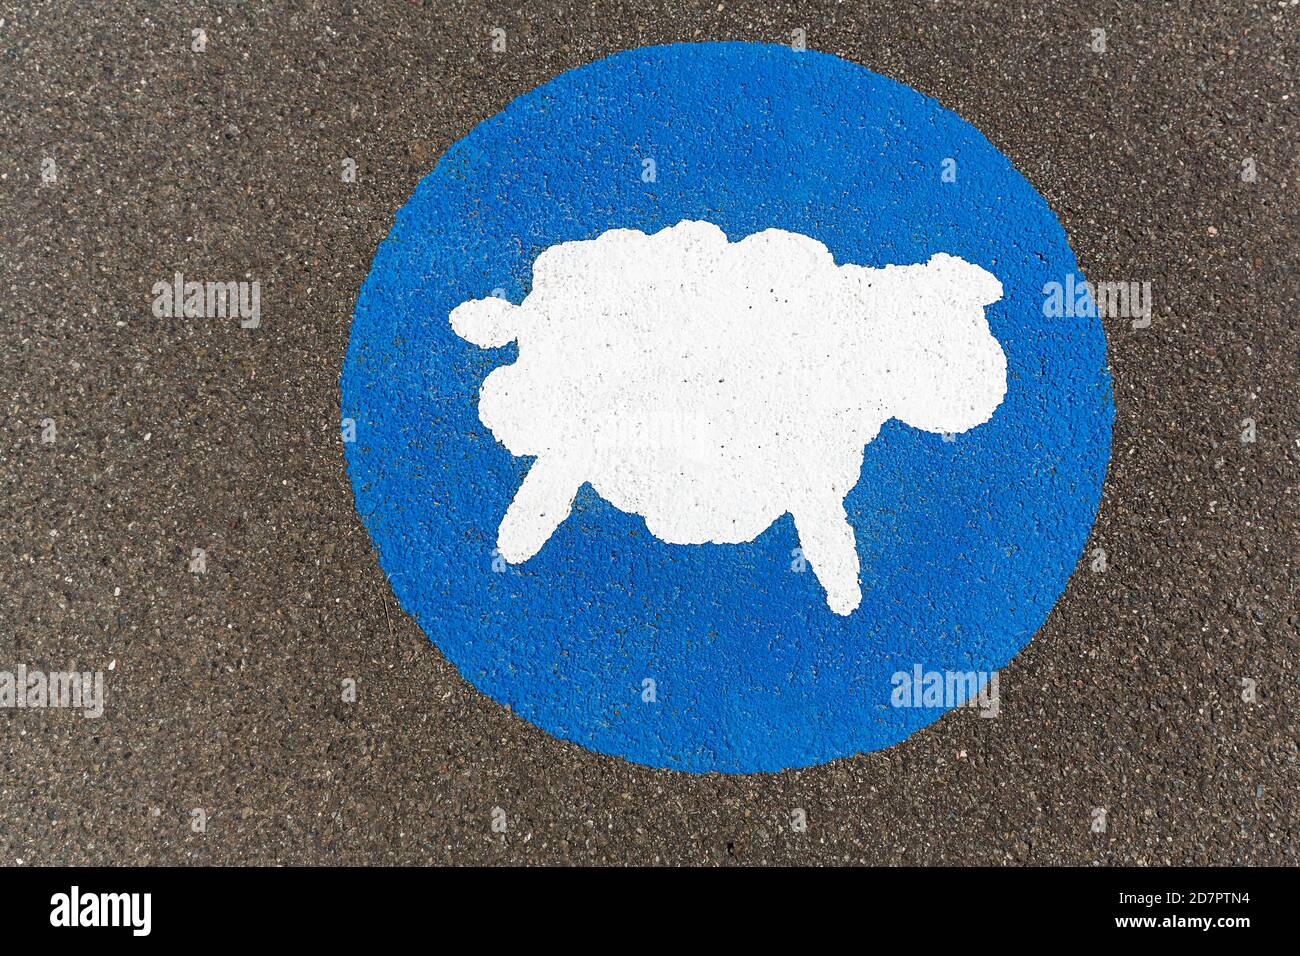 Weiße Schafe auf blauem Hintergrund, hat Priorität, Piktogramm auf dem Boden wirbt Betrachtung auf dem Deich, Elbe-Radweg, Lüneburg Bezirk Stockfoto